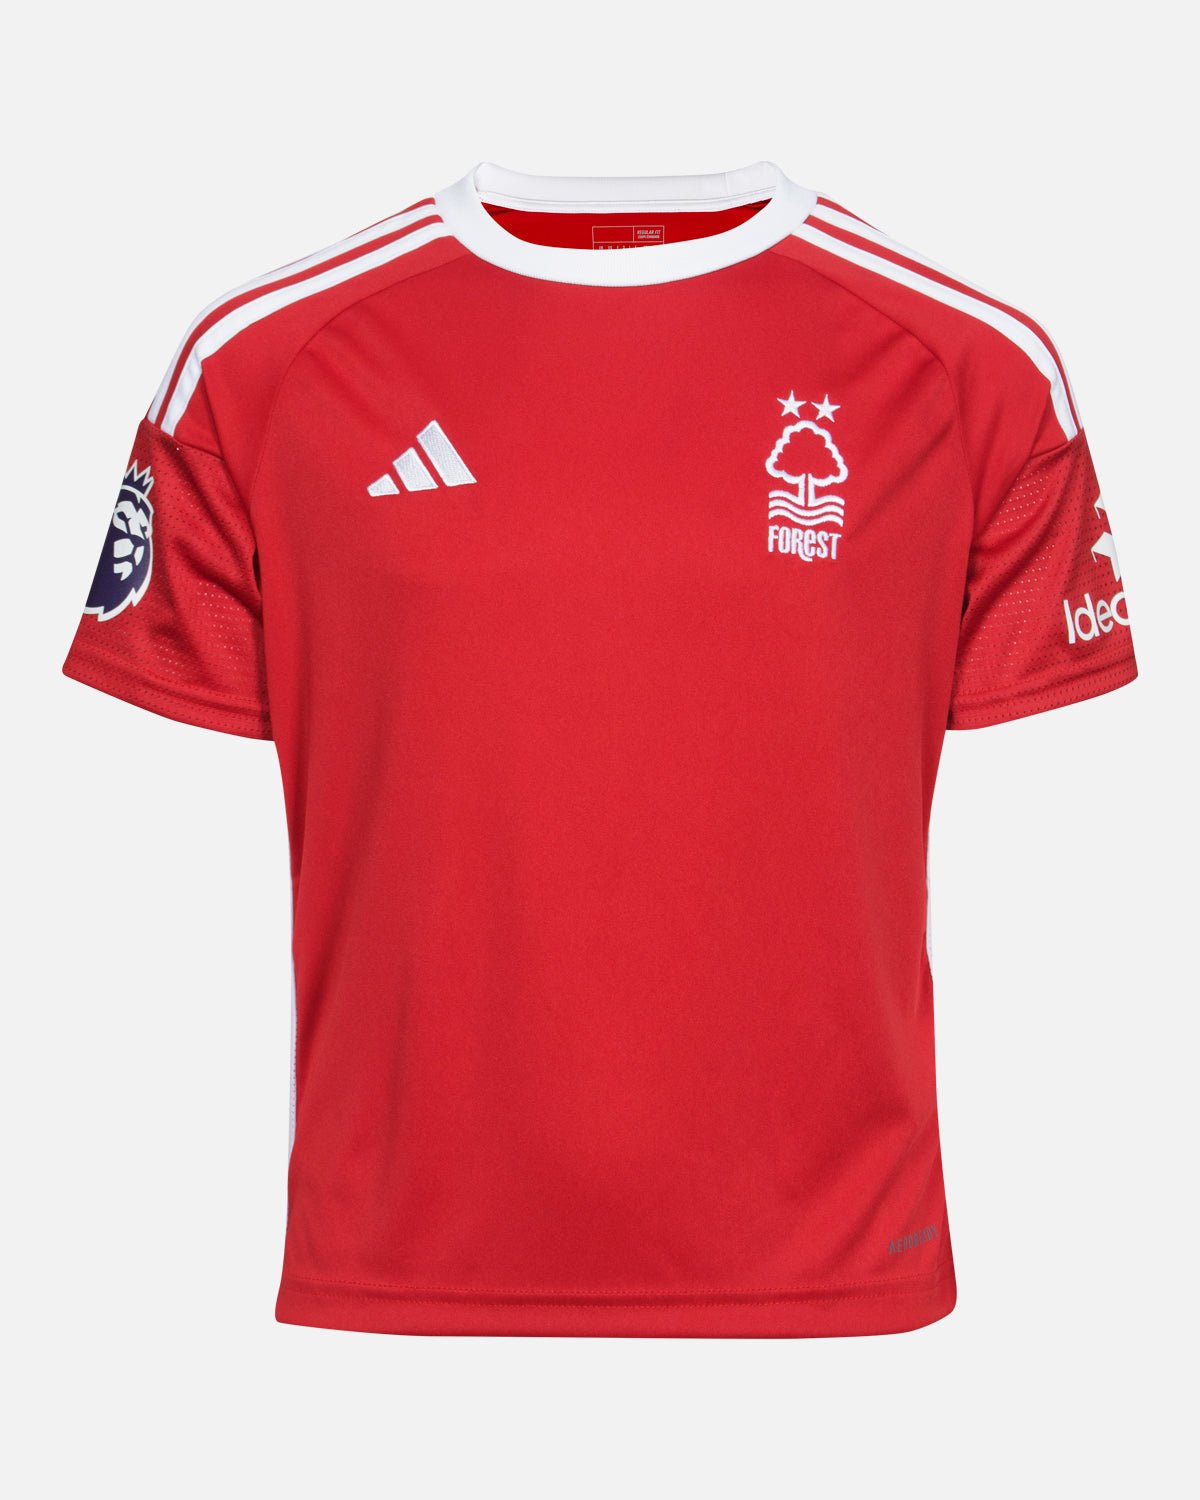 NFFC Junior Home Shirt 23-24 - Kouyaté 8 - Nottingham Forest FC